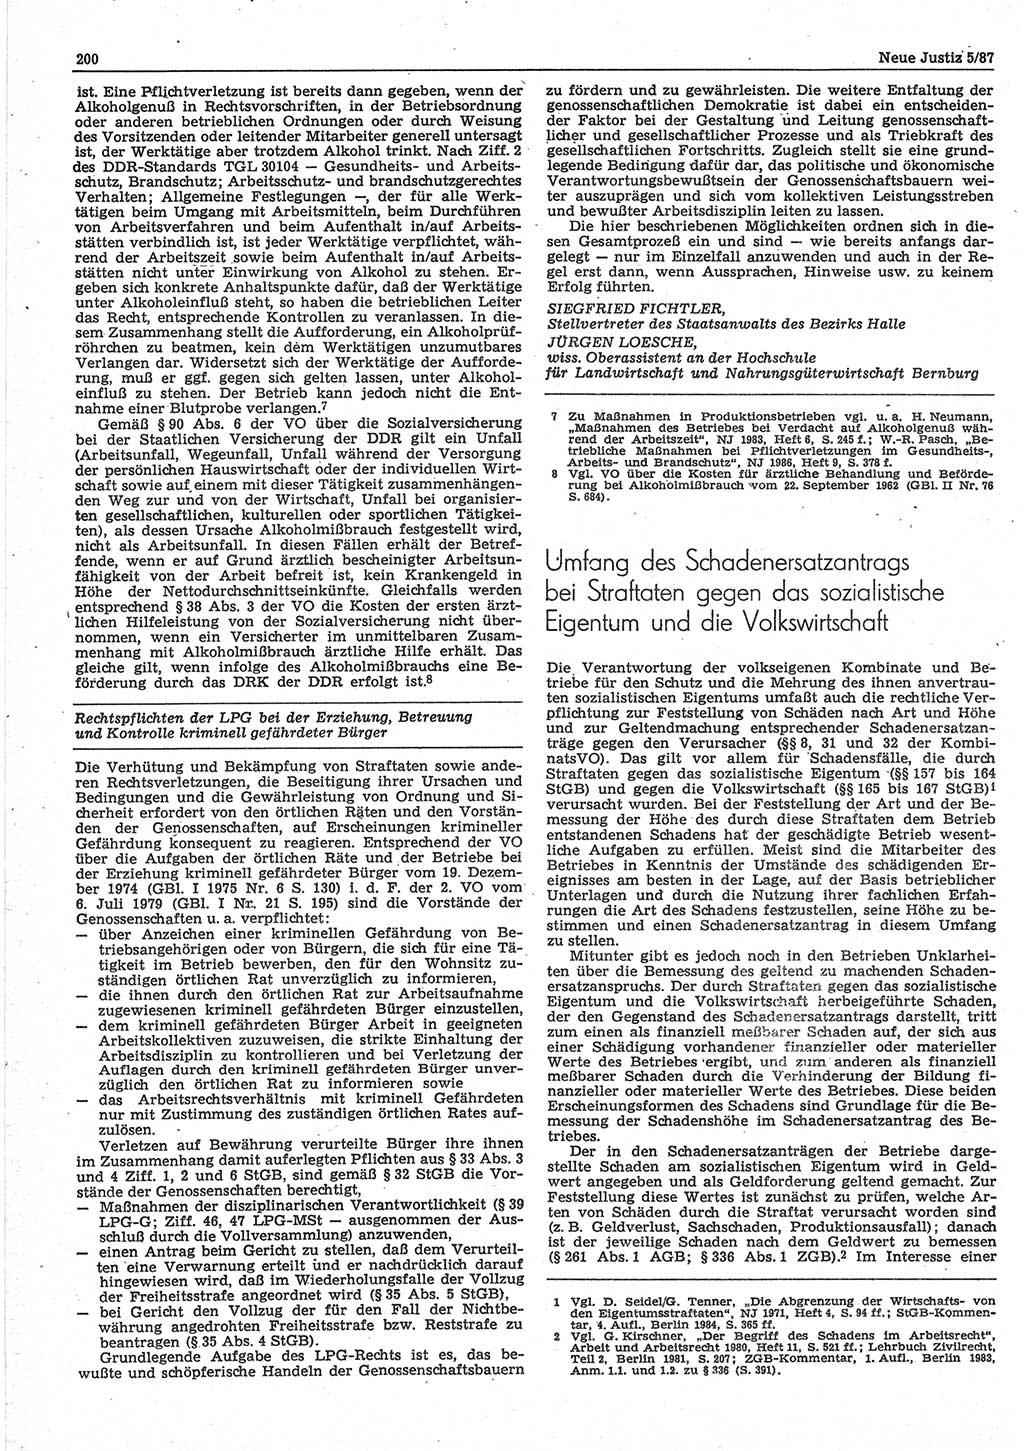 Neue Justiz (NJ), Zeitschrift für sozialistisches Recht und Gesetzlichkeit [Deutsche Demokratische Republik (DDR)], 41. Jahrgang 1987, Seite 200 (NJ DDR 1987, S. 200)